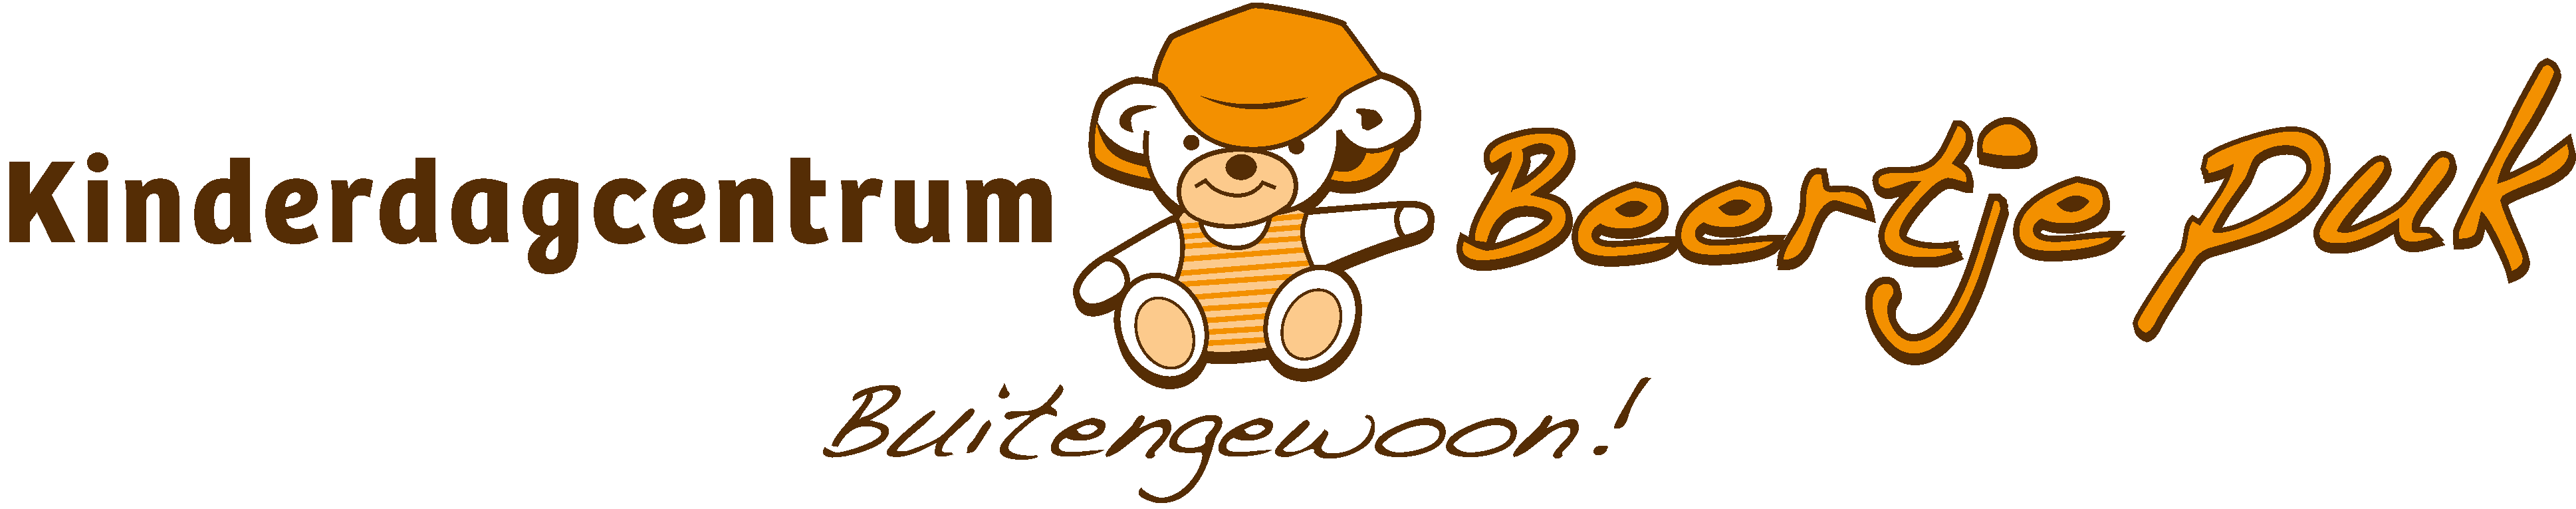 Logo Beertje Puk - Buitengewoon!